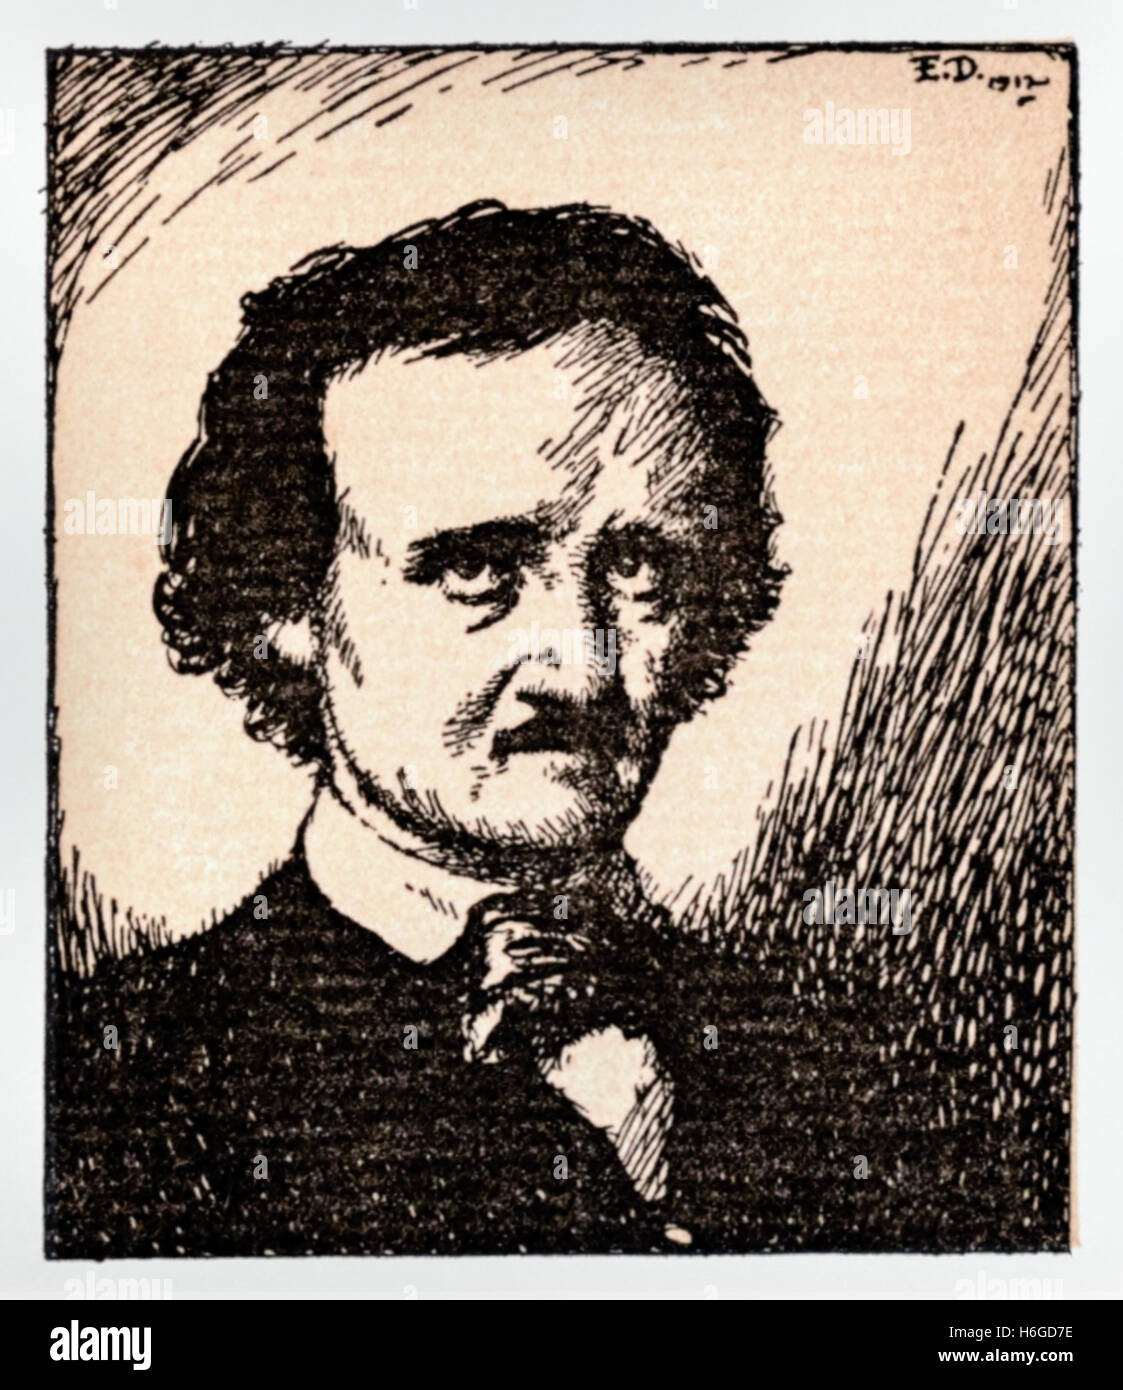 Porträt von Poe (1809-1849), Illustration von Edmund Dulac (1882-1953), die eine Sammlung seiner Werke illustriert in 1912 veröffentlicht. Siehe Beschreibung weitere Informationen Stockfoto